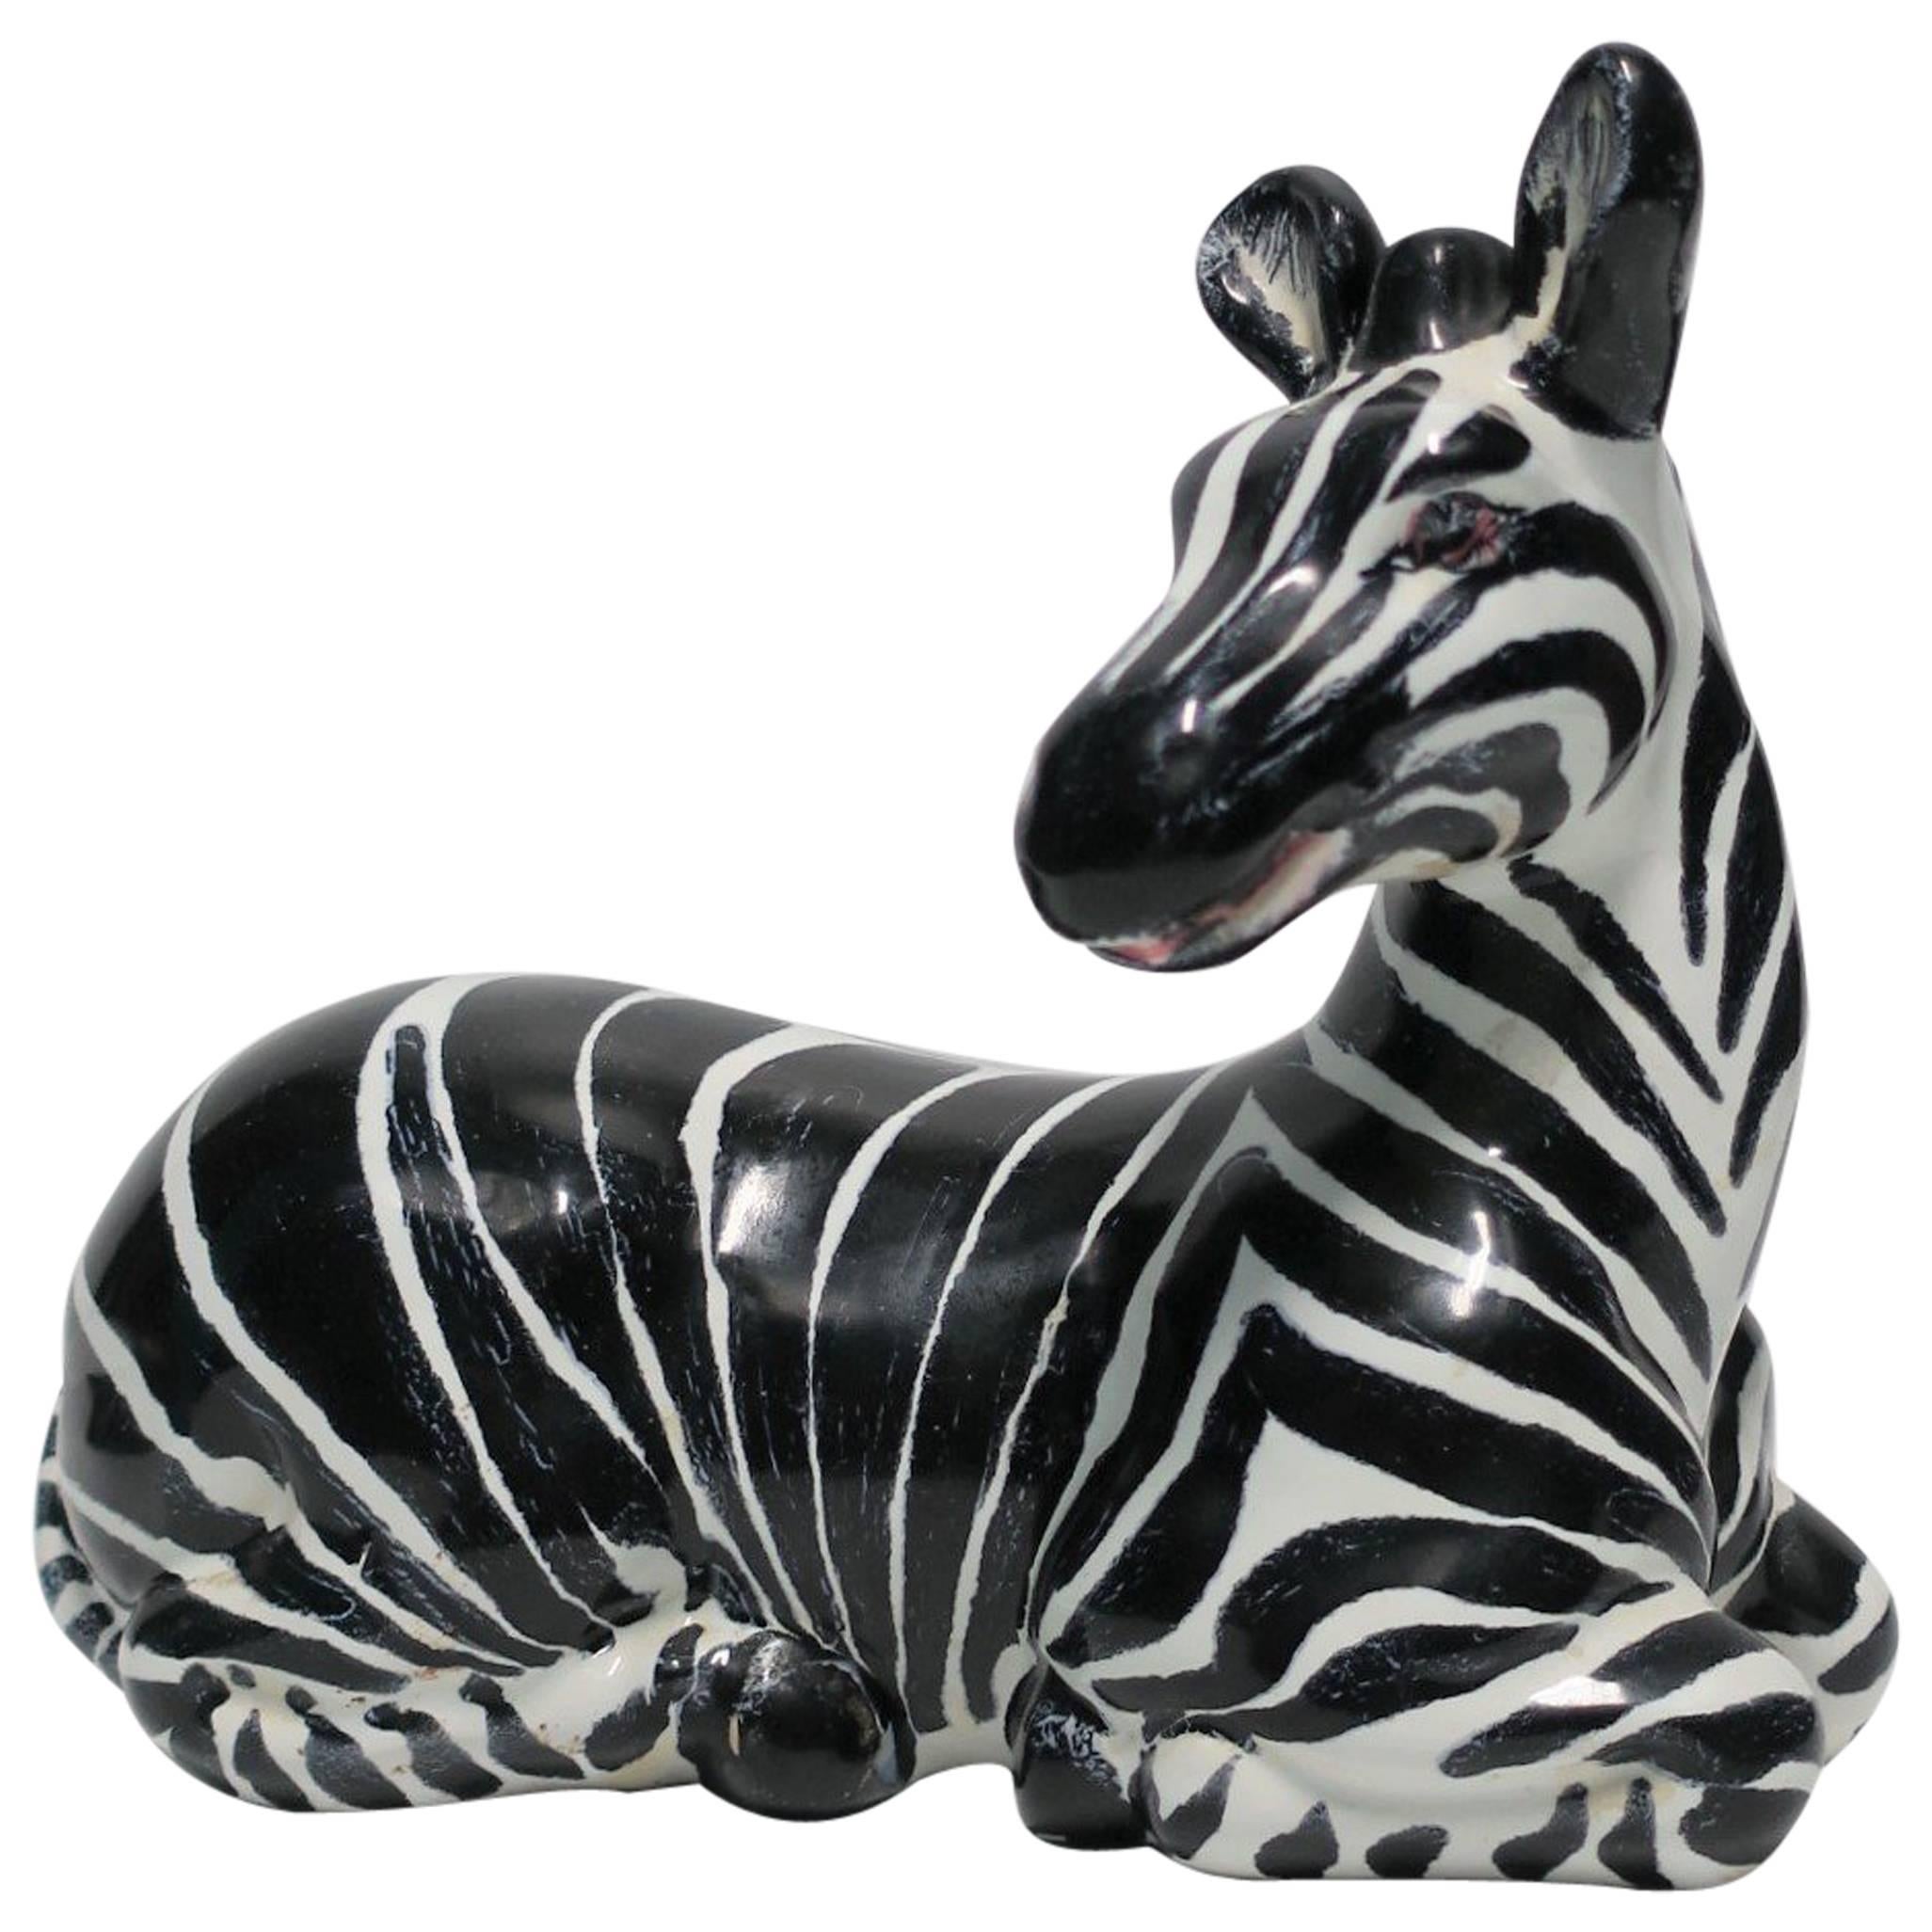 zebra sculptures